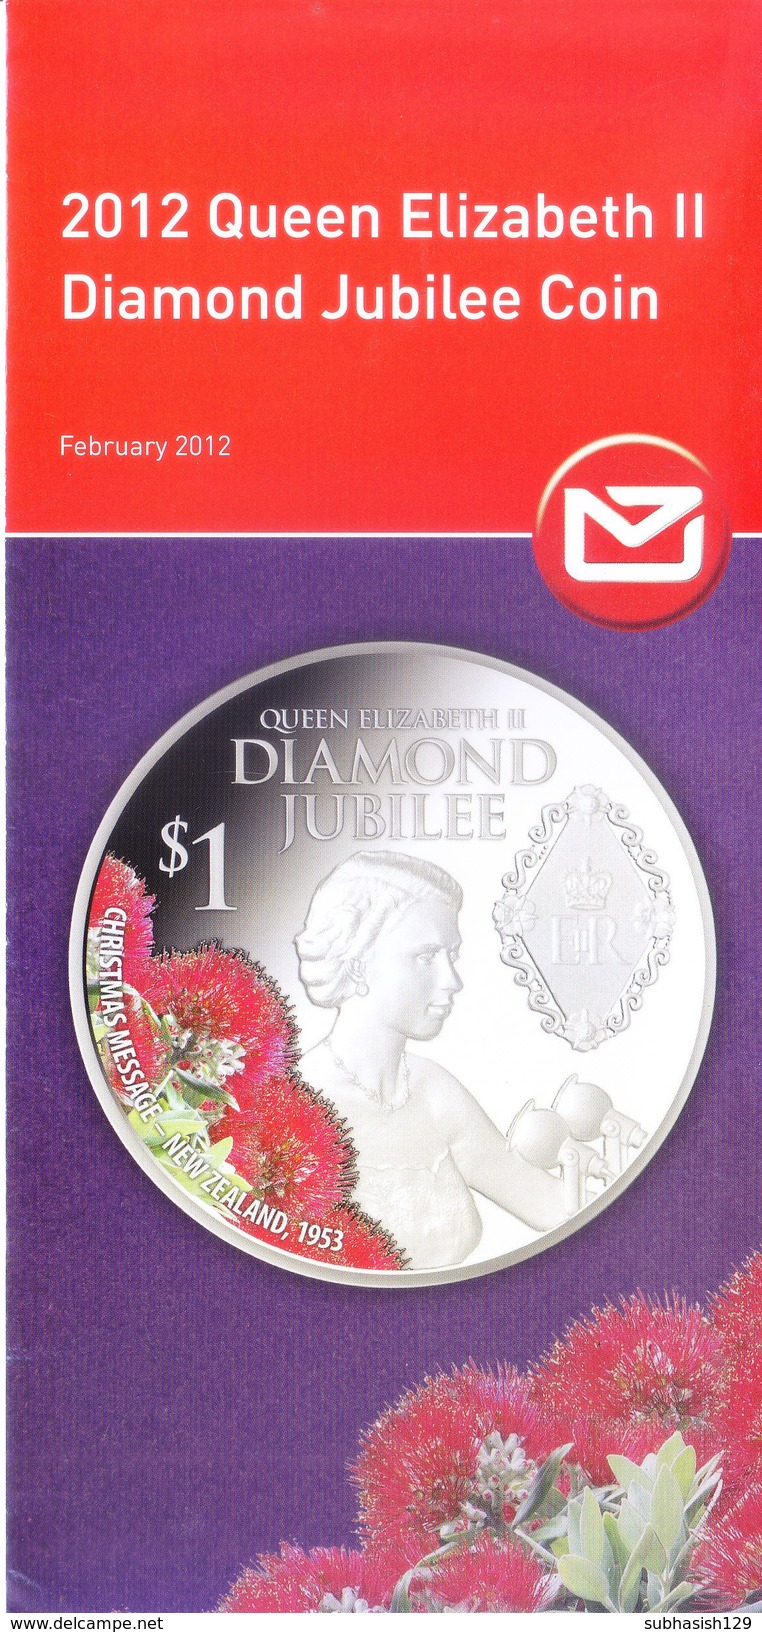 PHILATELIC BROCHURE / INFORMATION SHEET - NEW ZEALAND - FEBRUARY 2012 - QUEEN ELIZABETH II DIAMOND JUBILEE COIN - MINT - Briefe U. Dokumente